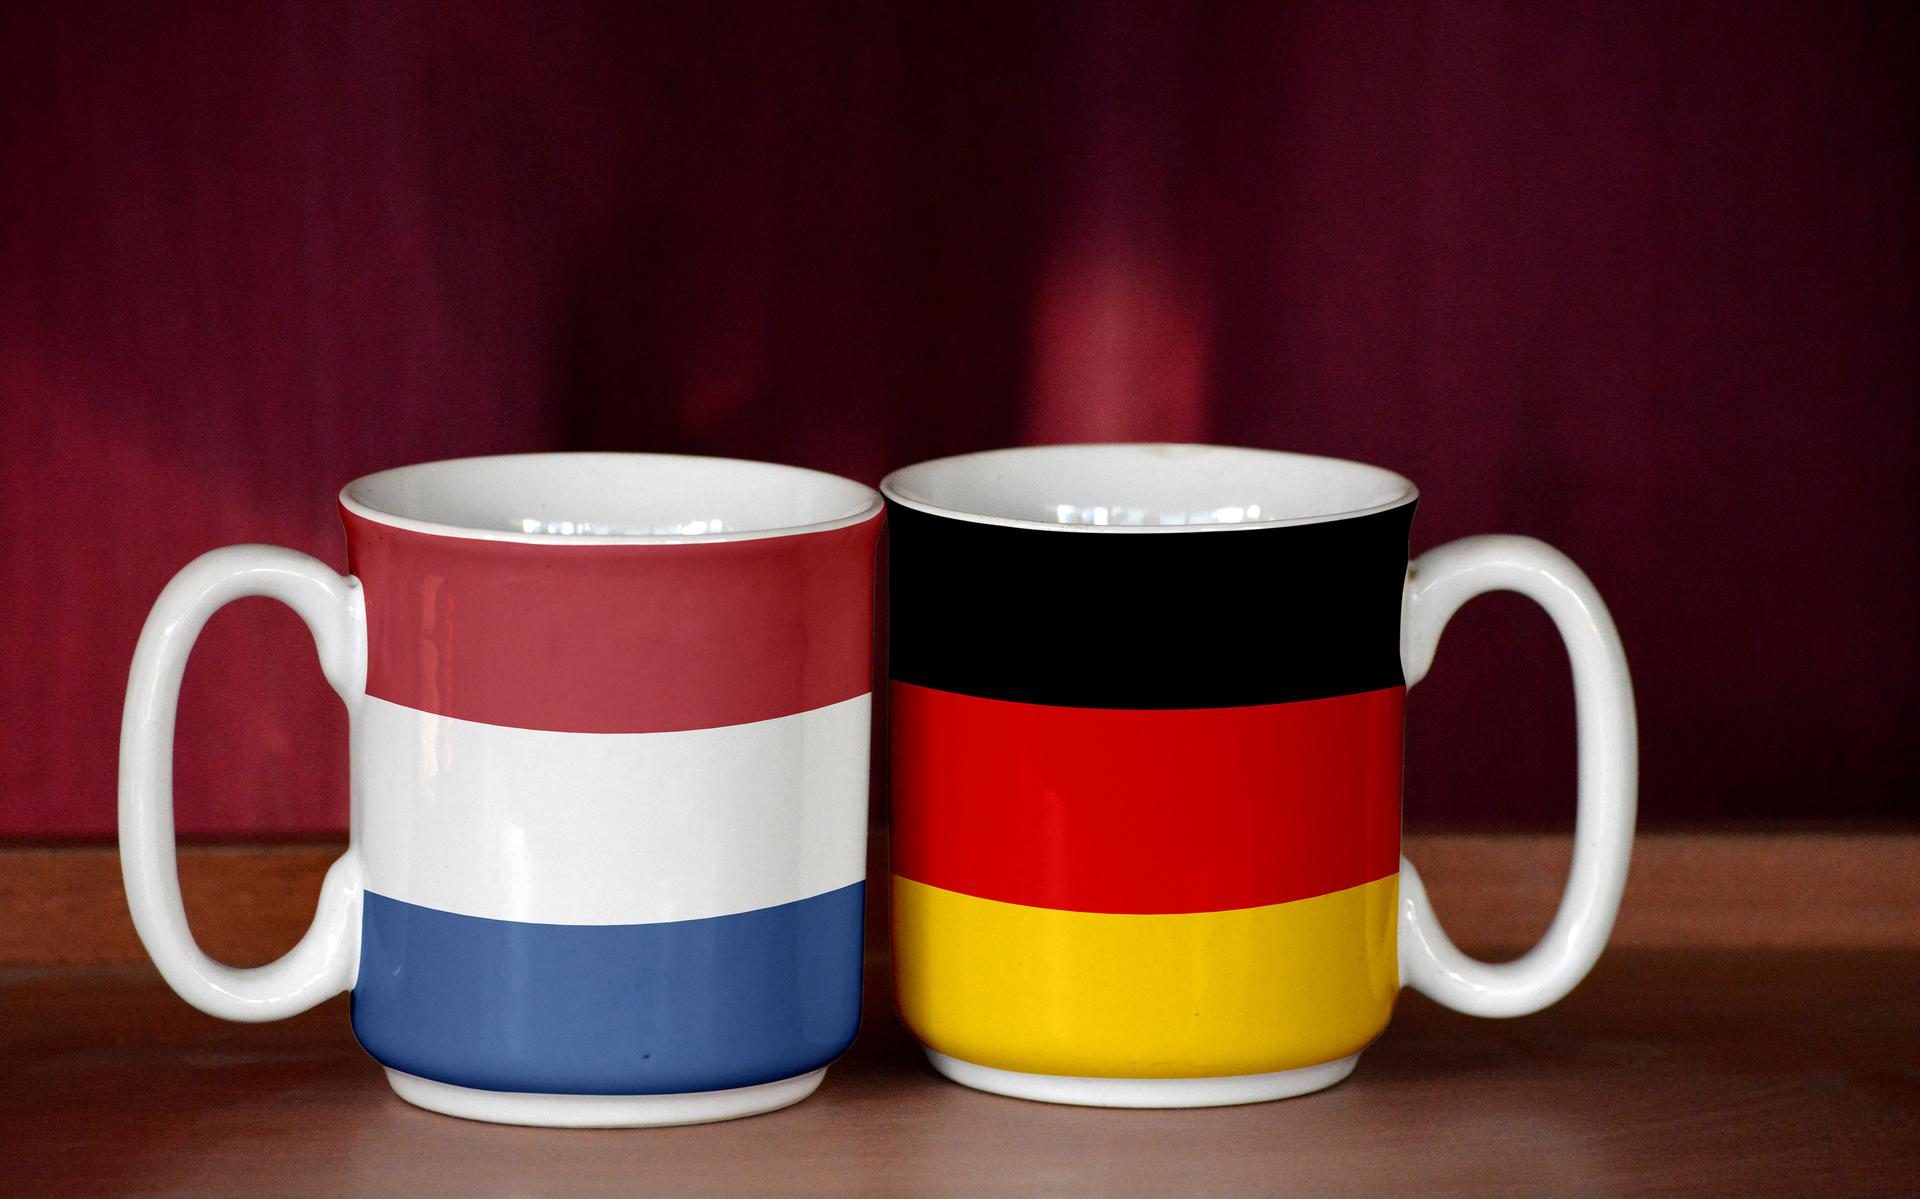  ,,Een Nederlander begint het gesprek met koffie, een Duitser drinkt het pas na afloop omdat je het dan verdiend hebt.’’